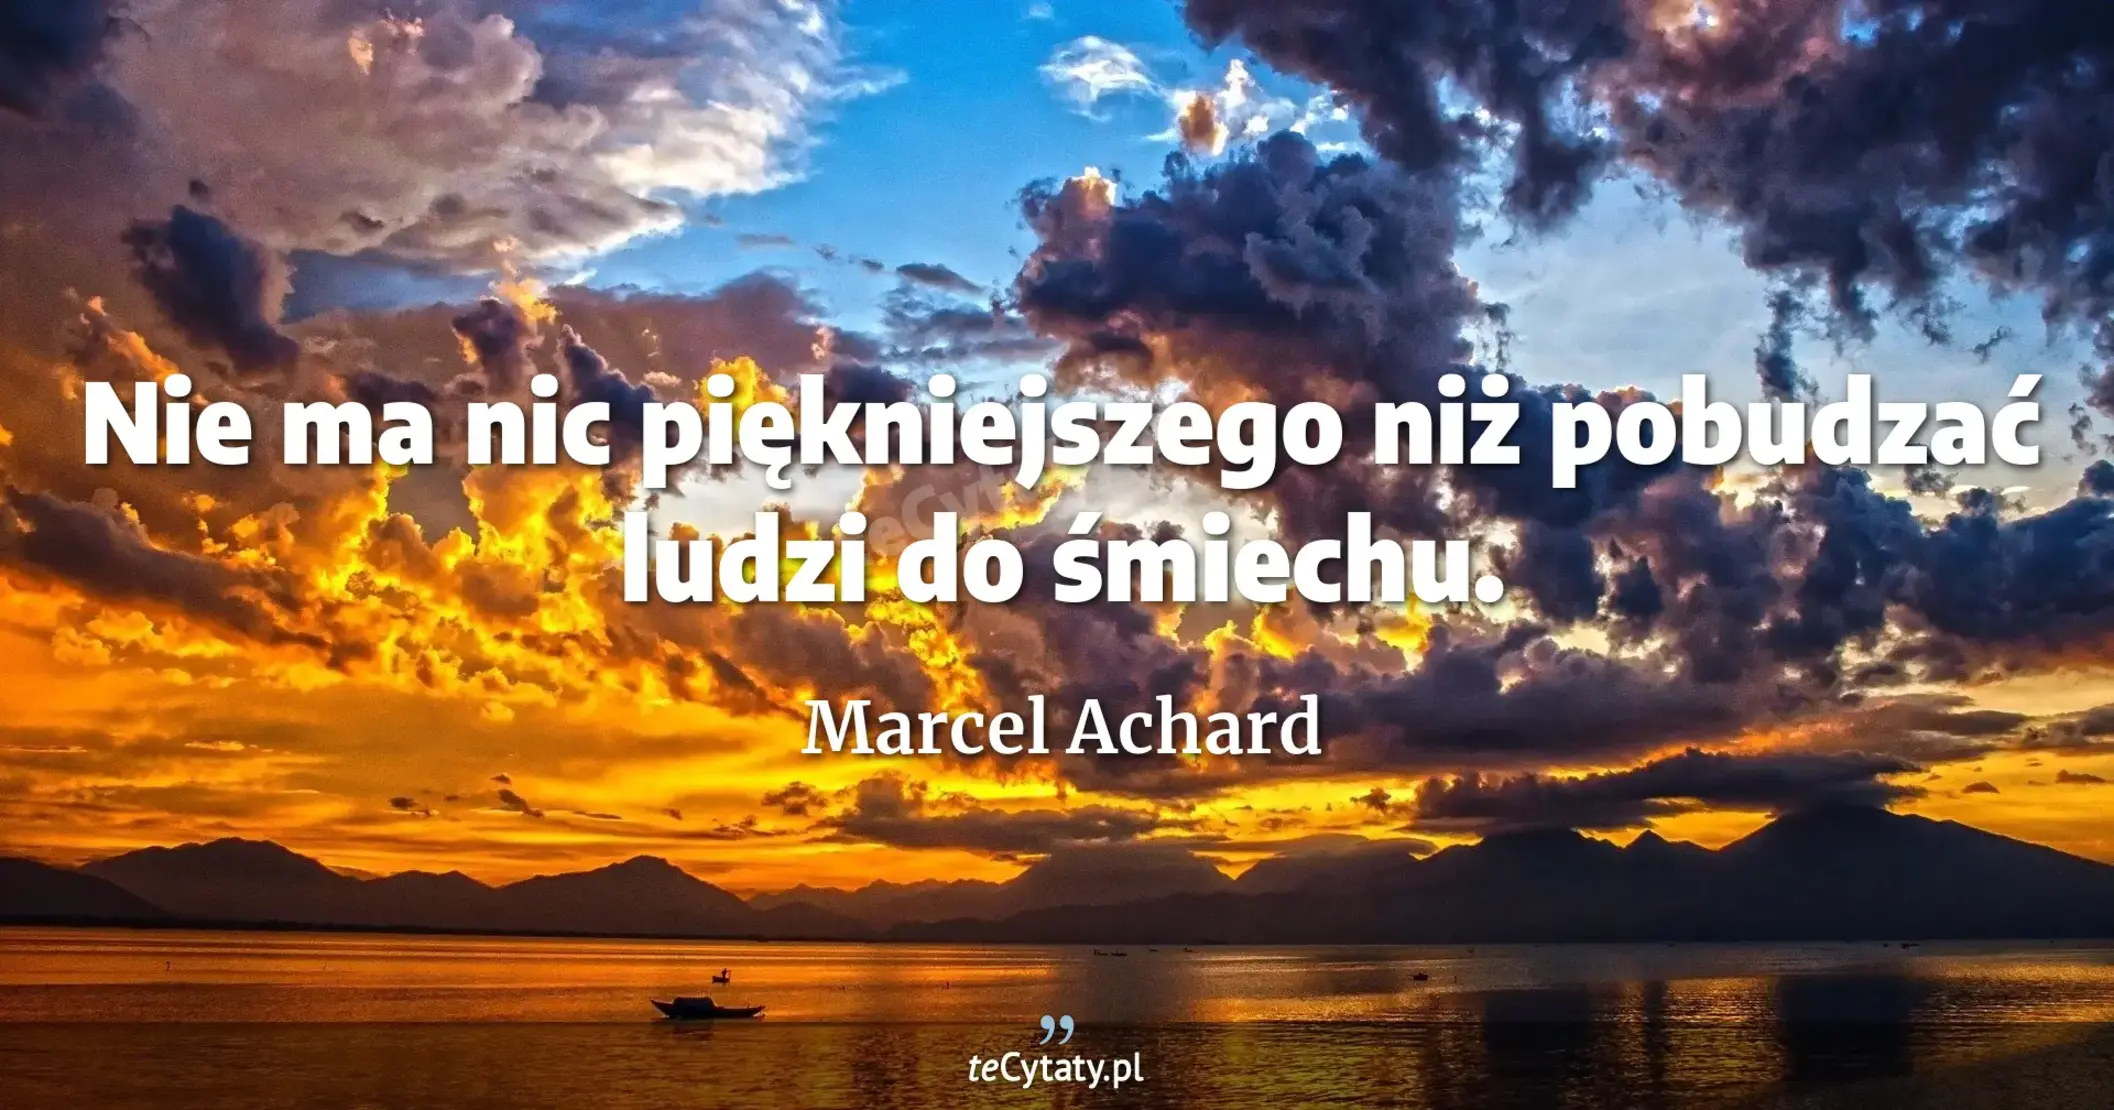 Nie ma nic piękniejszego niż pobudzać ludzi do śmiechu. - Marcel Achard